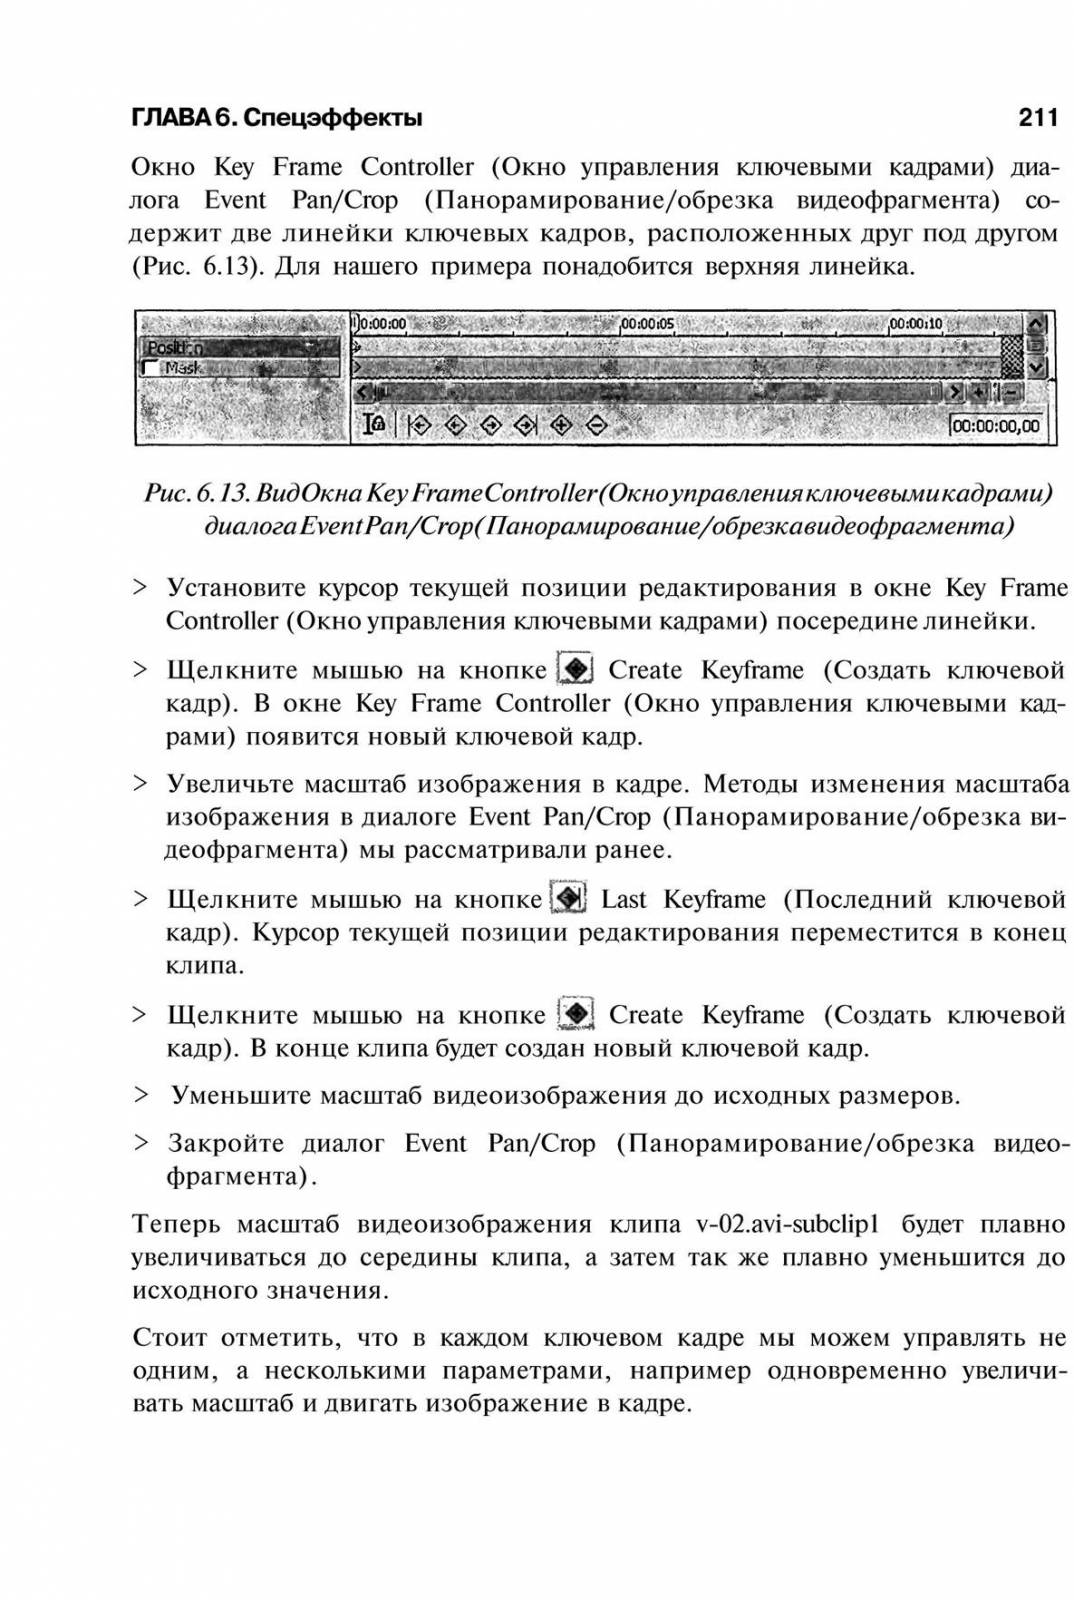 http://redaktori-uroki.3dn.ru/_ph/14/888098419.jpg